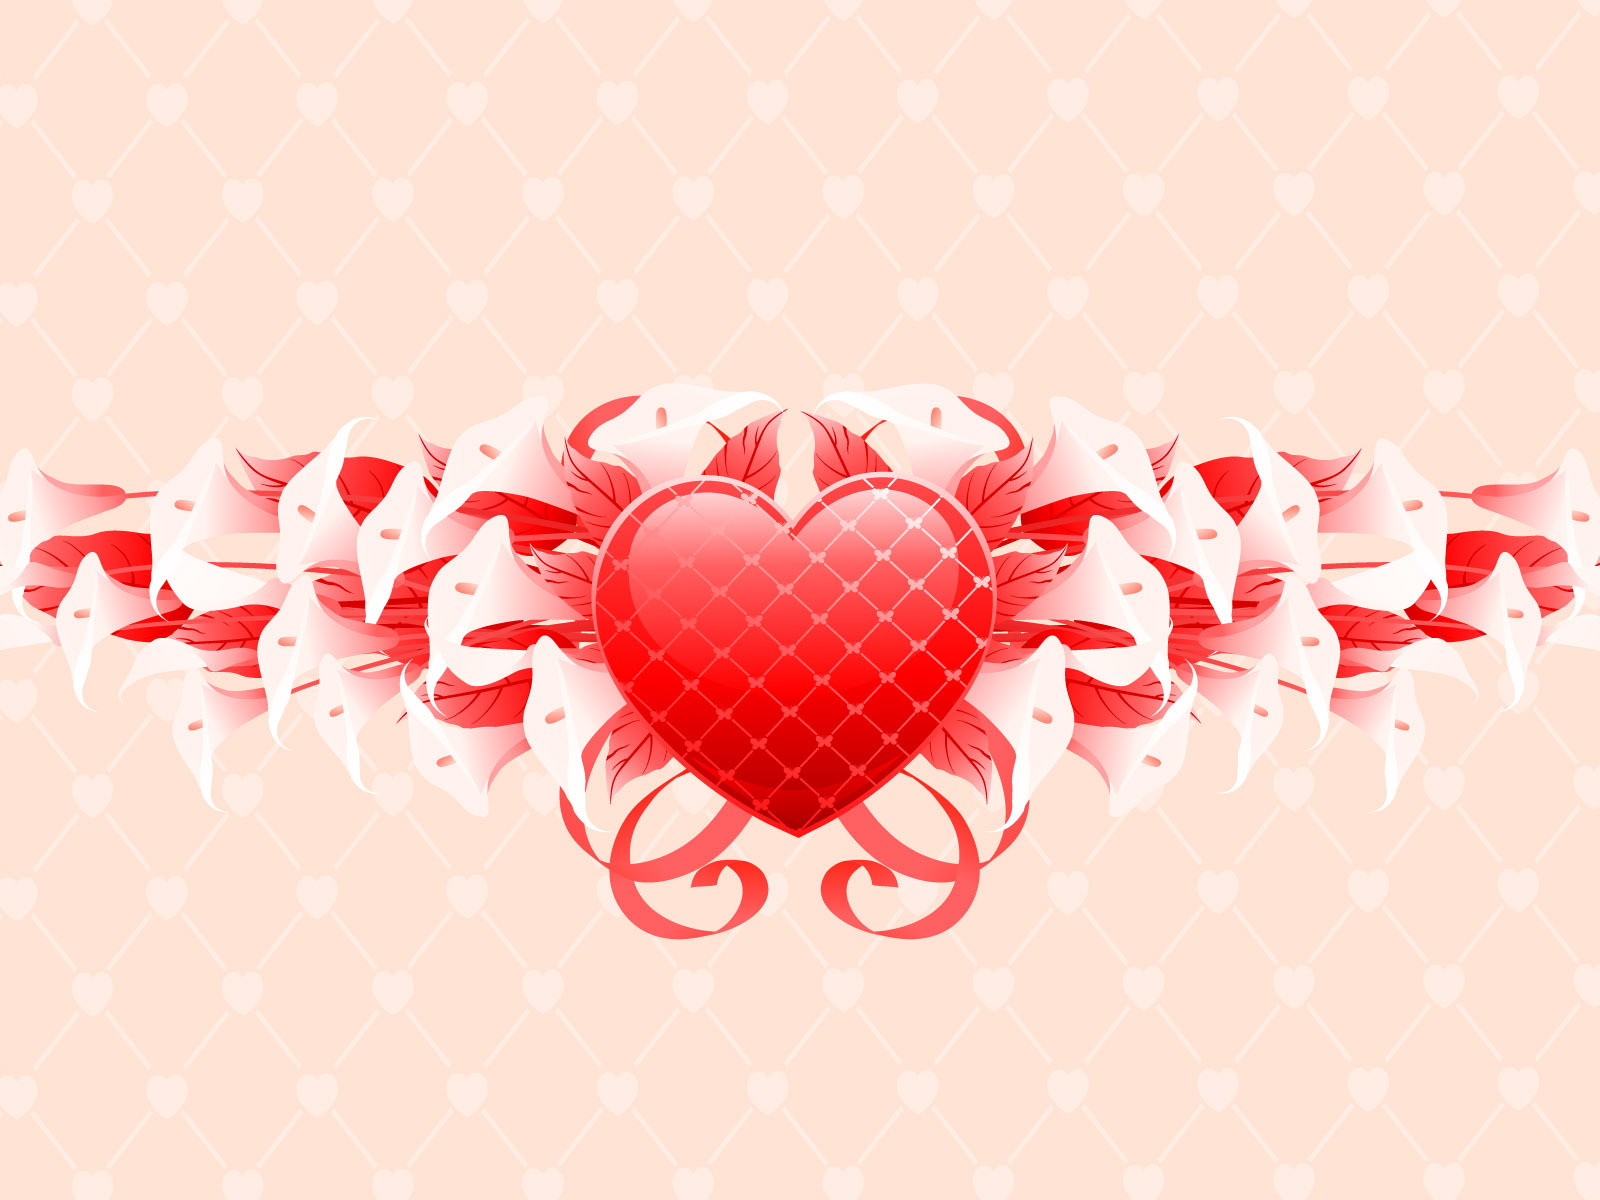 14 февраля, st. valentine, сердце, день святого валентина